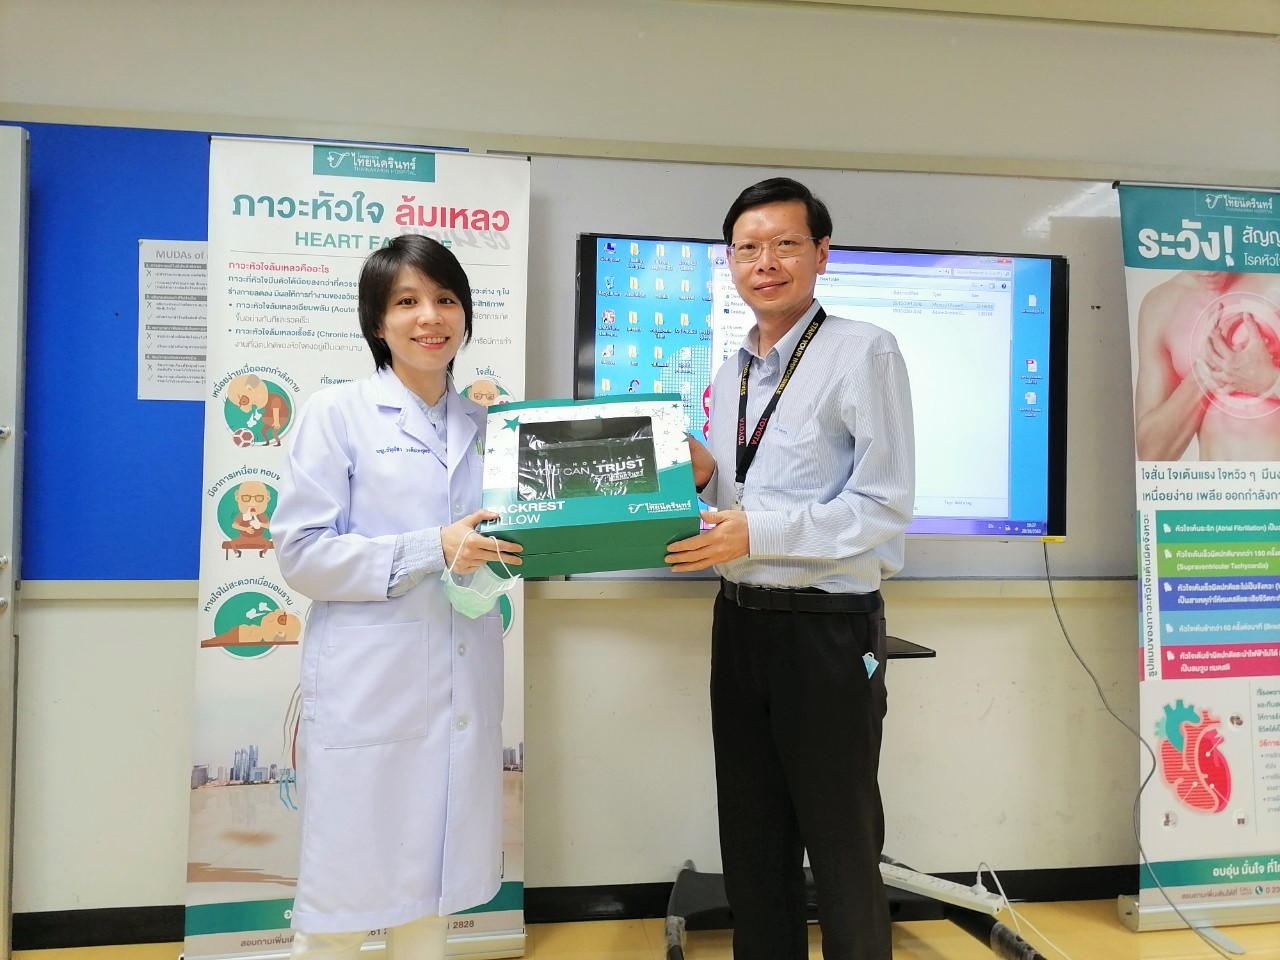 โรงพยาบาลไทยนครินทร์ ร่วมกับบริษัท โตโยต้า มอเตอร์ ประเทศไทย จำกัด จัดกิจกรรม 'ส่งเสริมสุขภาพดีใหักับพนักงานบริษัทคู่สัญญา'